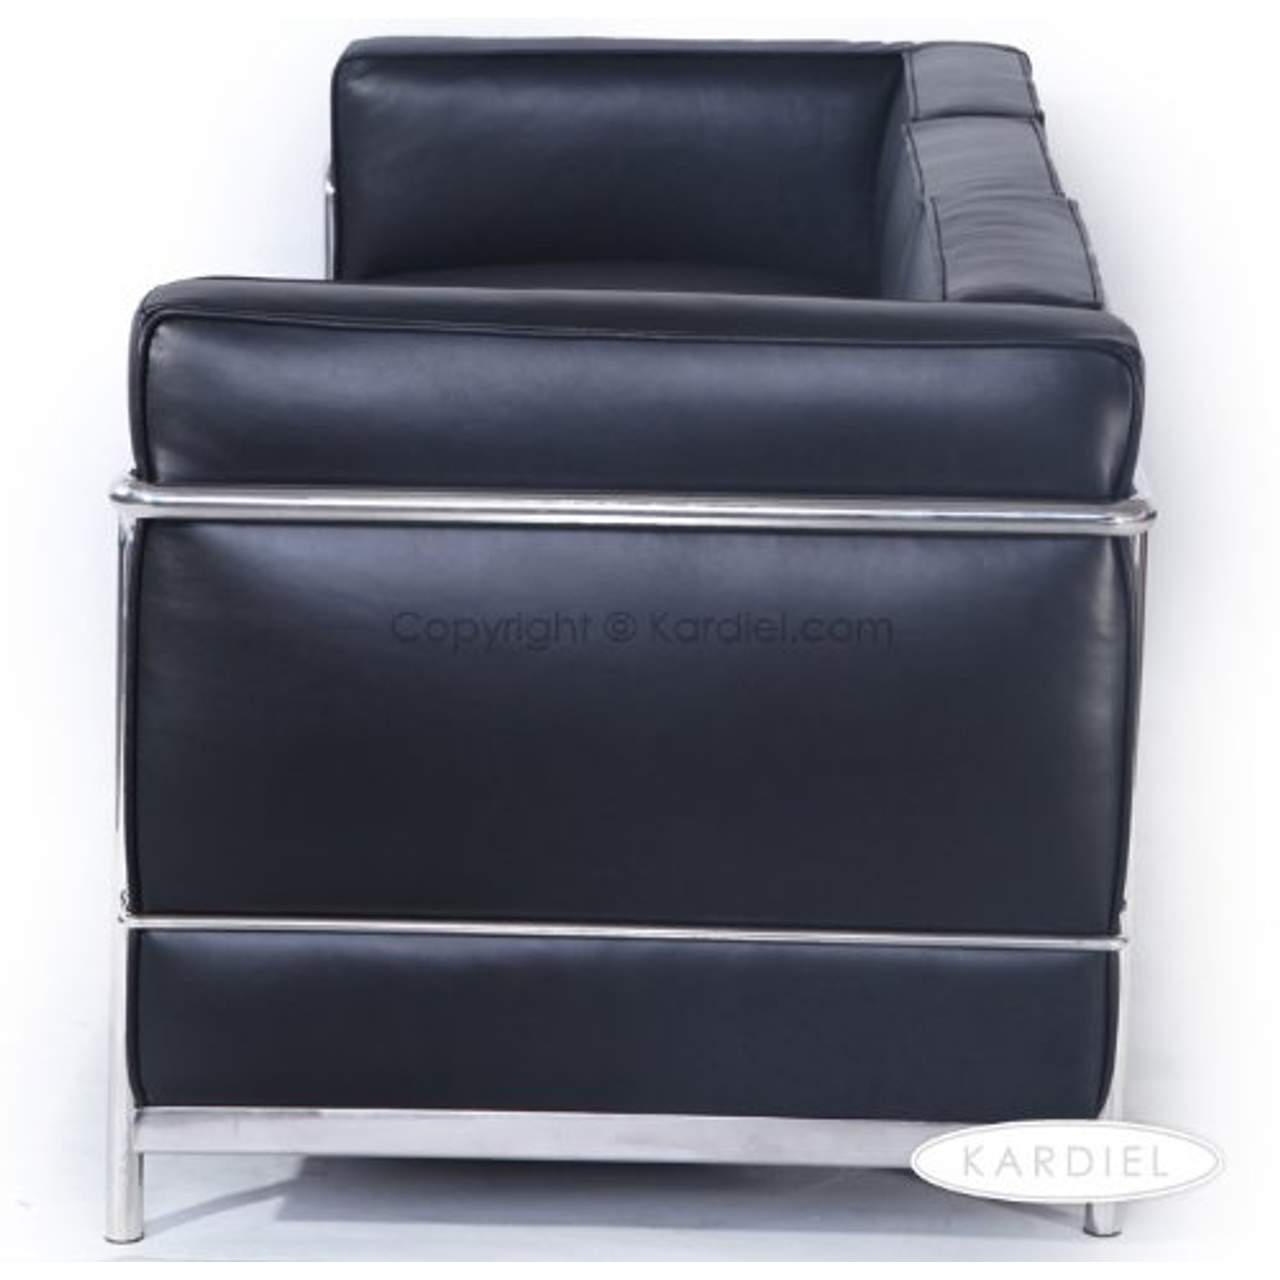 Kardiel Le Corbusier Style LC2 Sofa 3-Sitzer